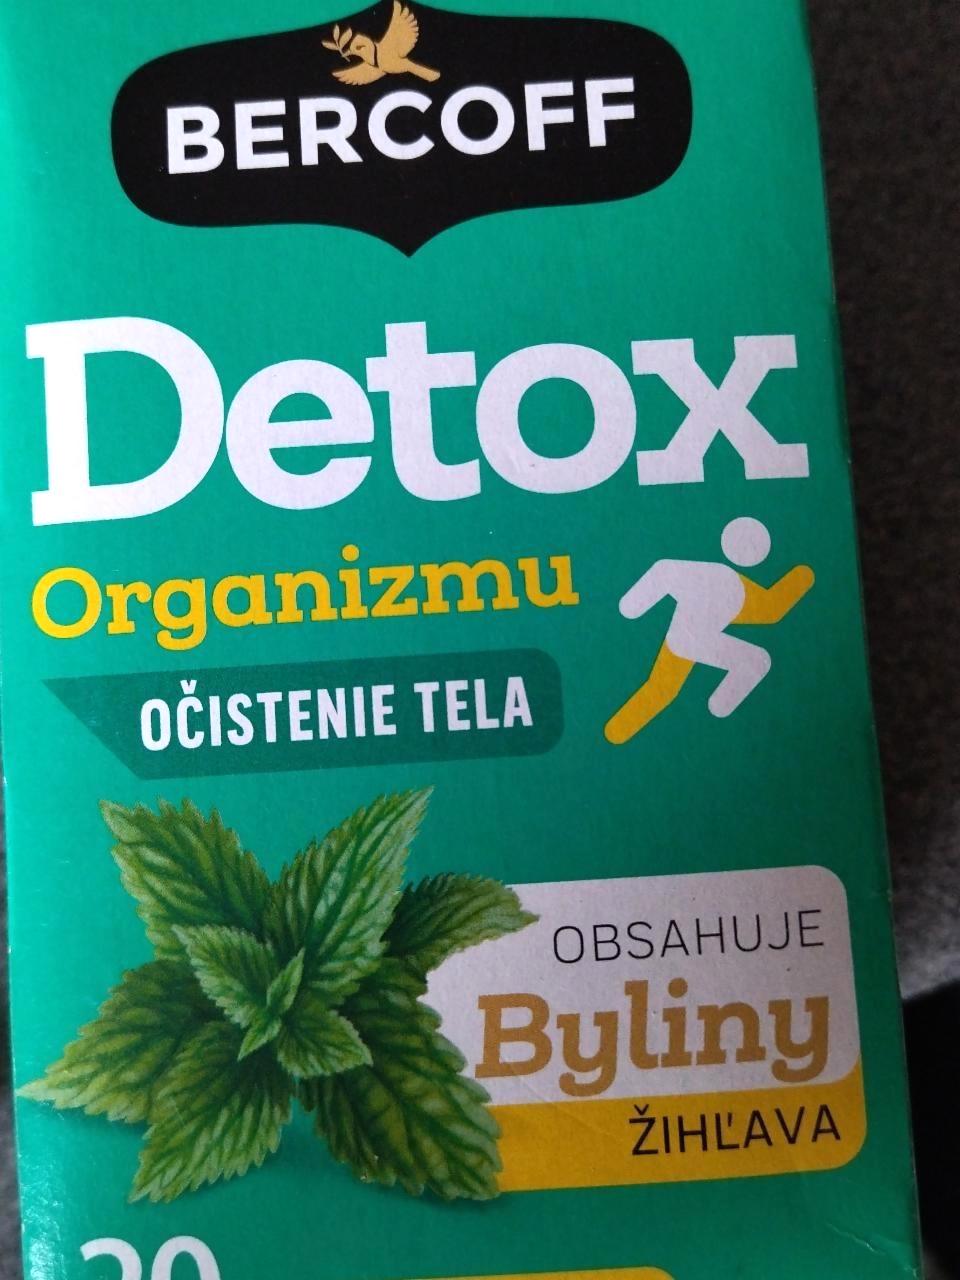 Képek - Detox tea Bercoff